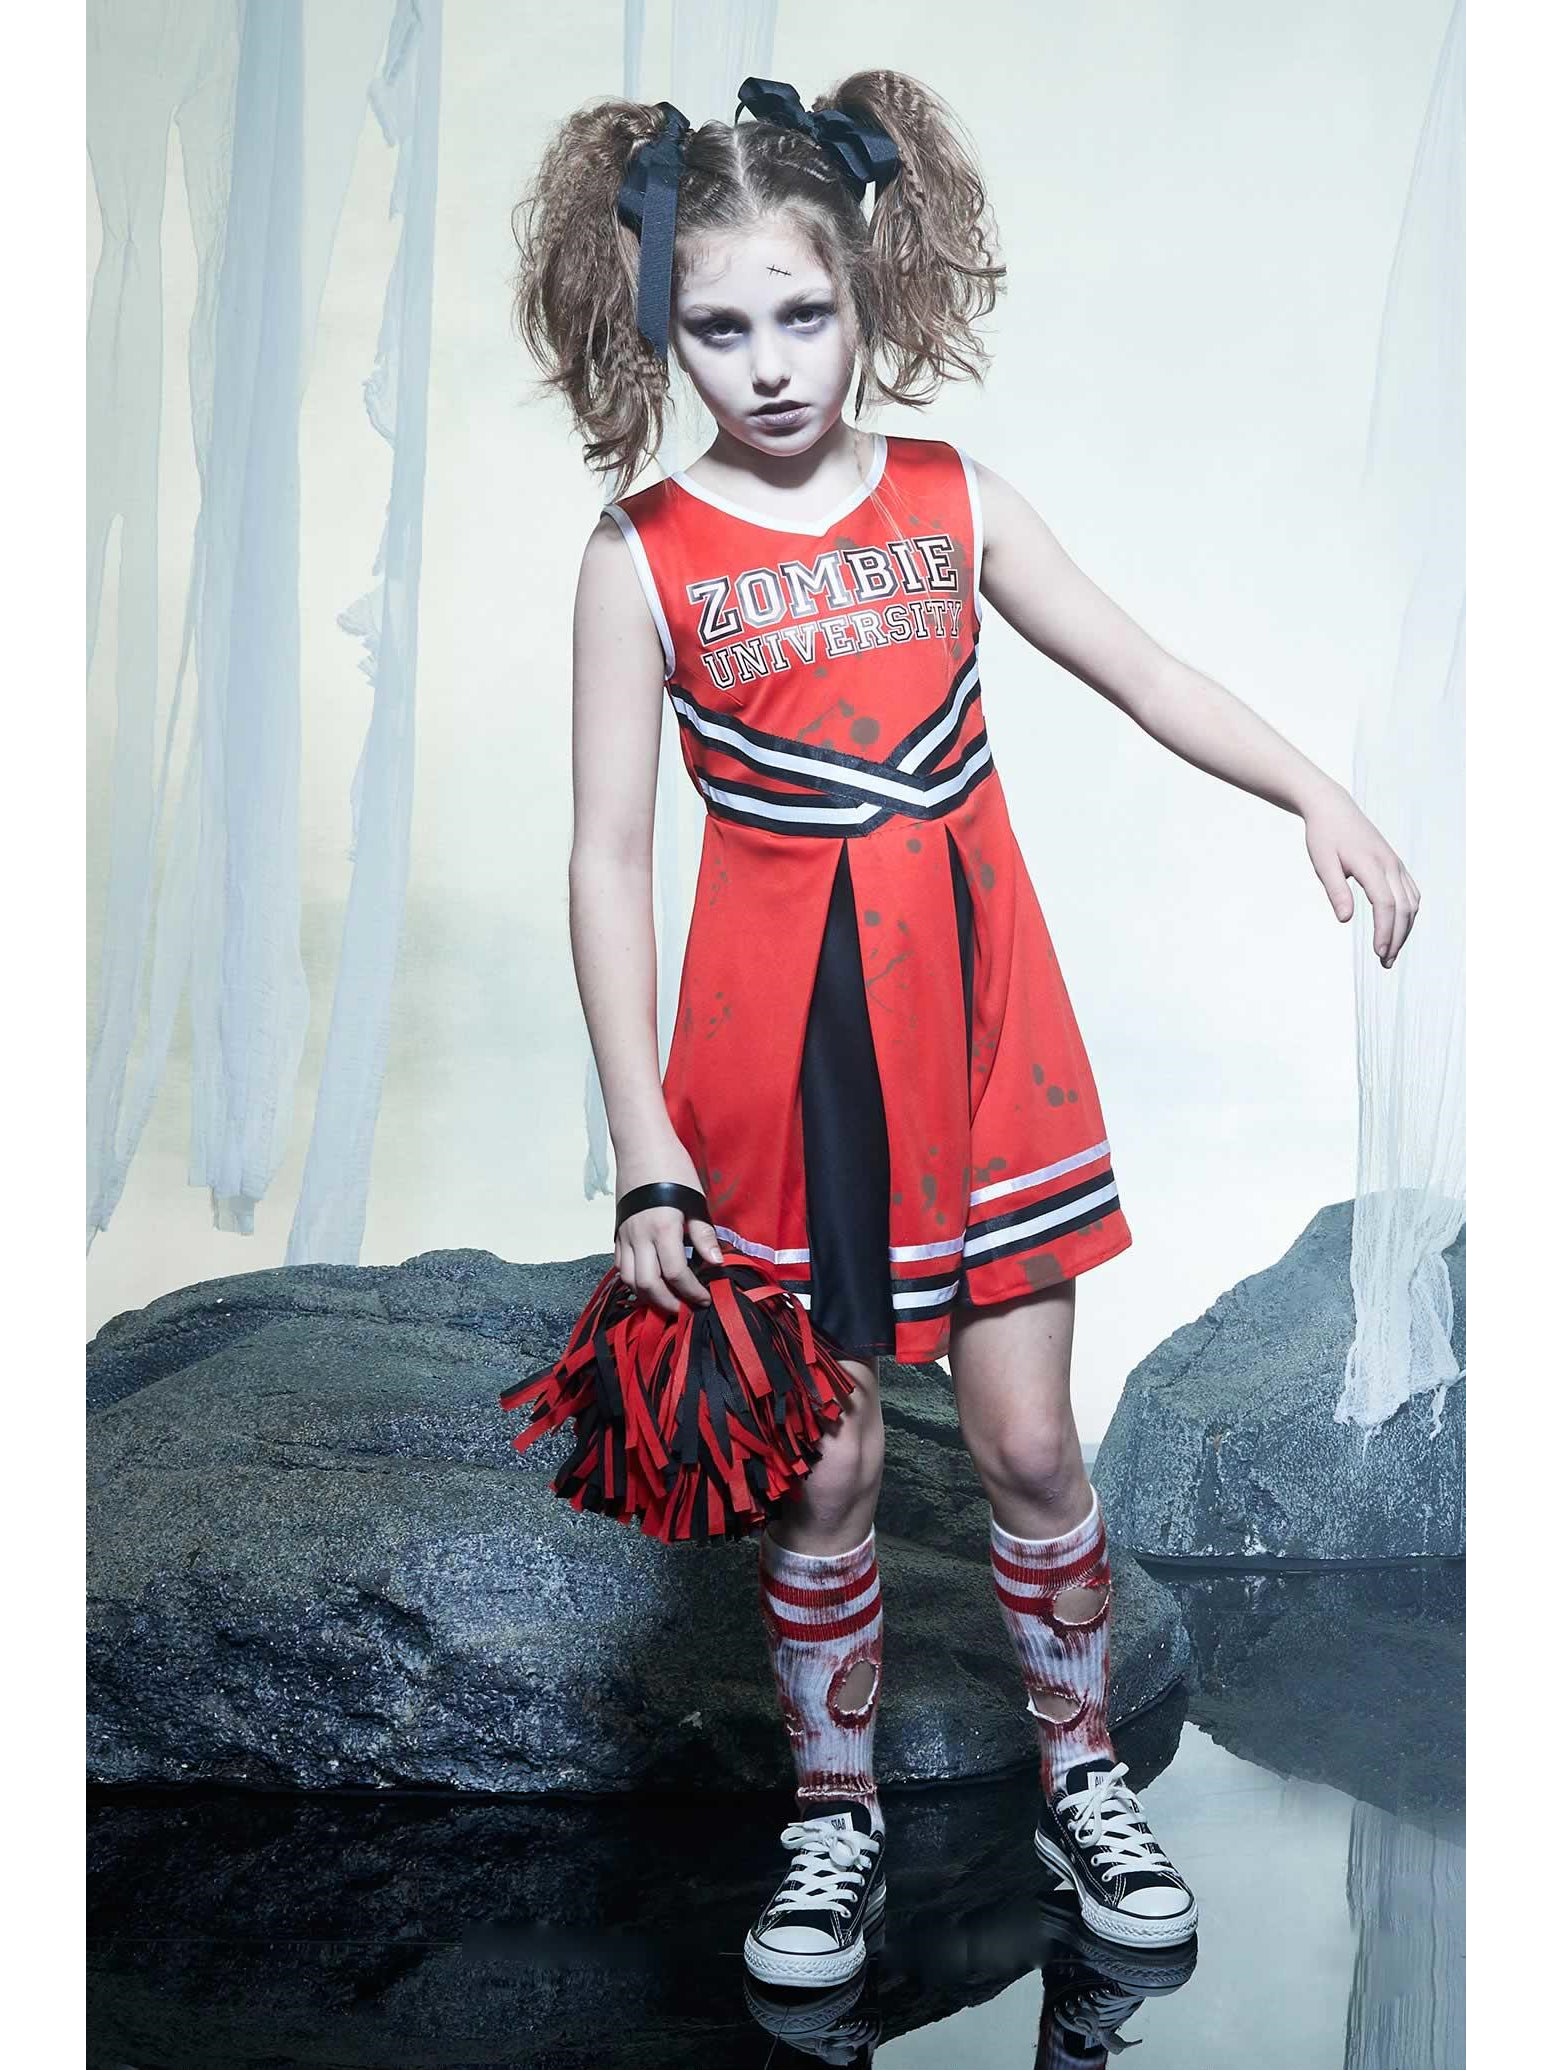 Zombie Cheerleader Costume for Girls – Chasing Fireflies